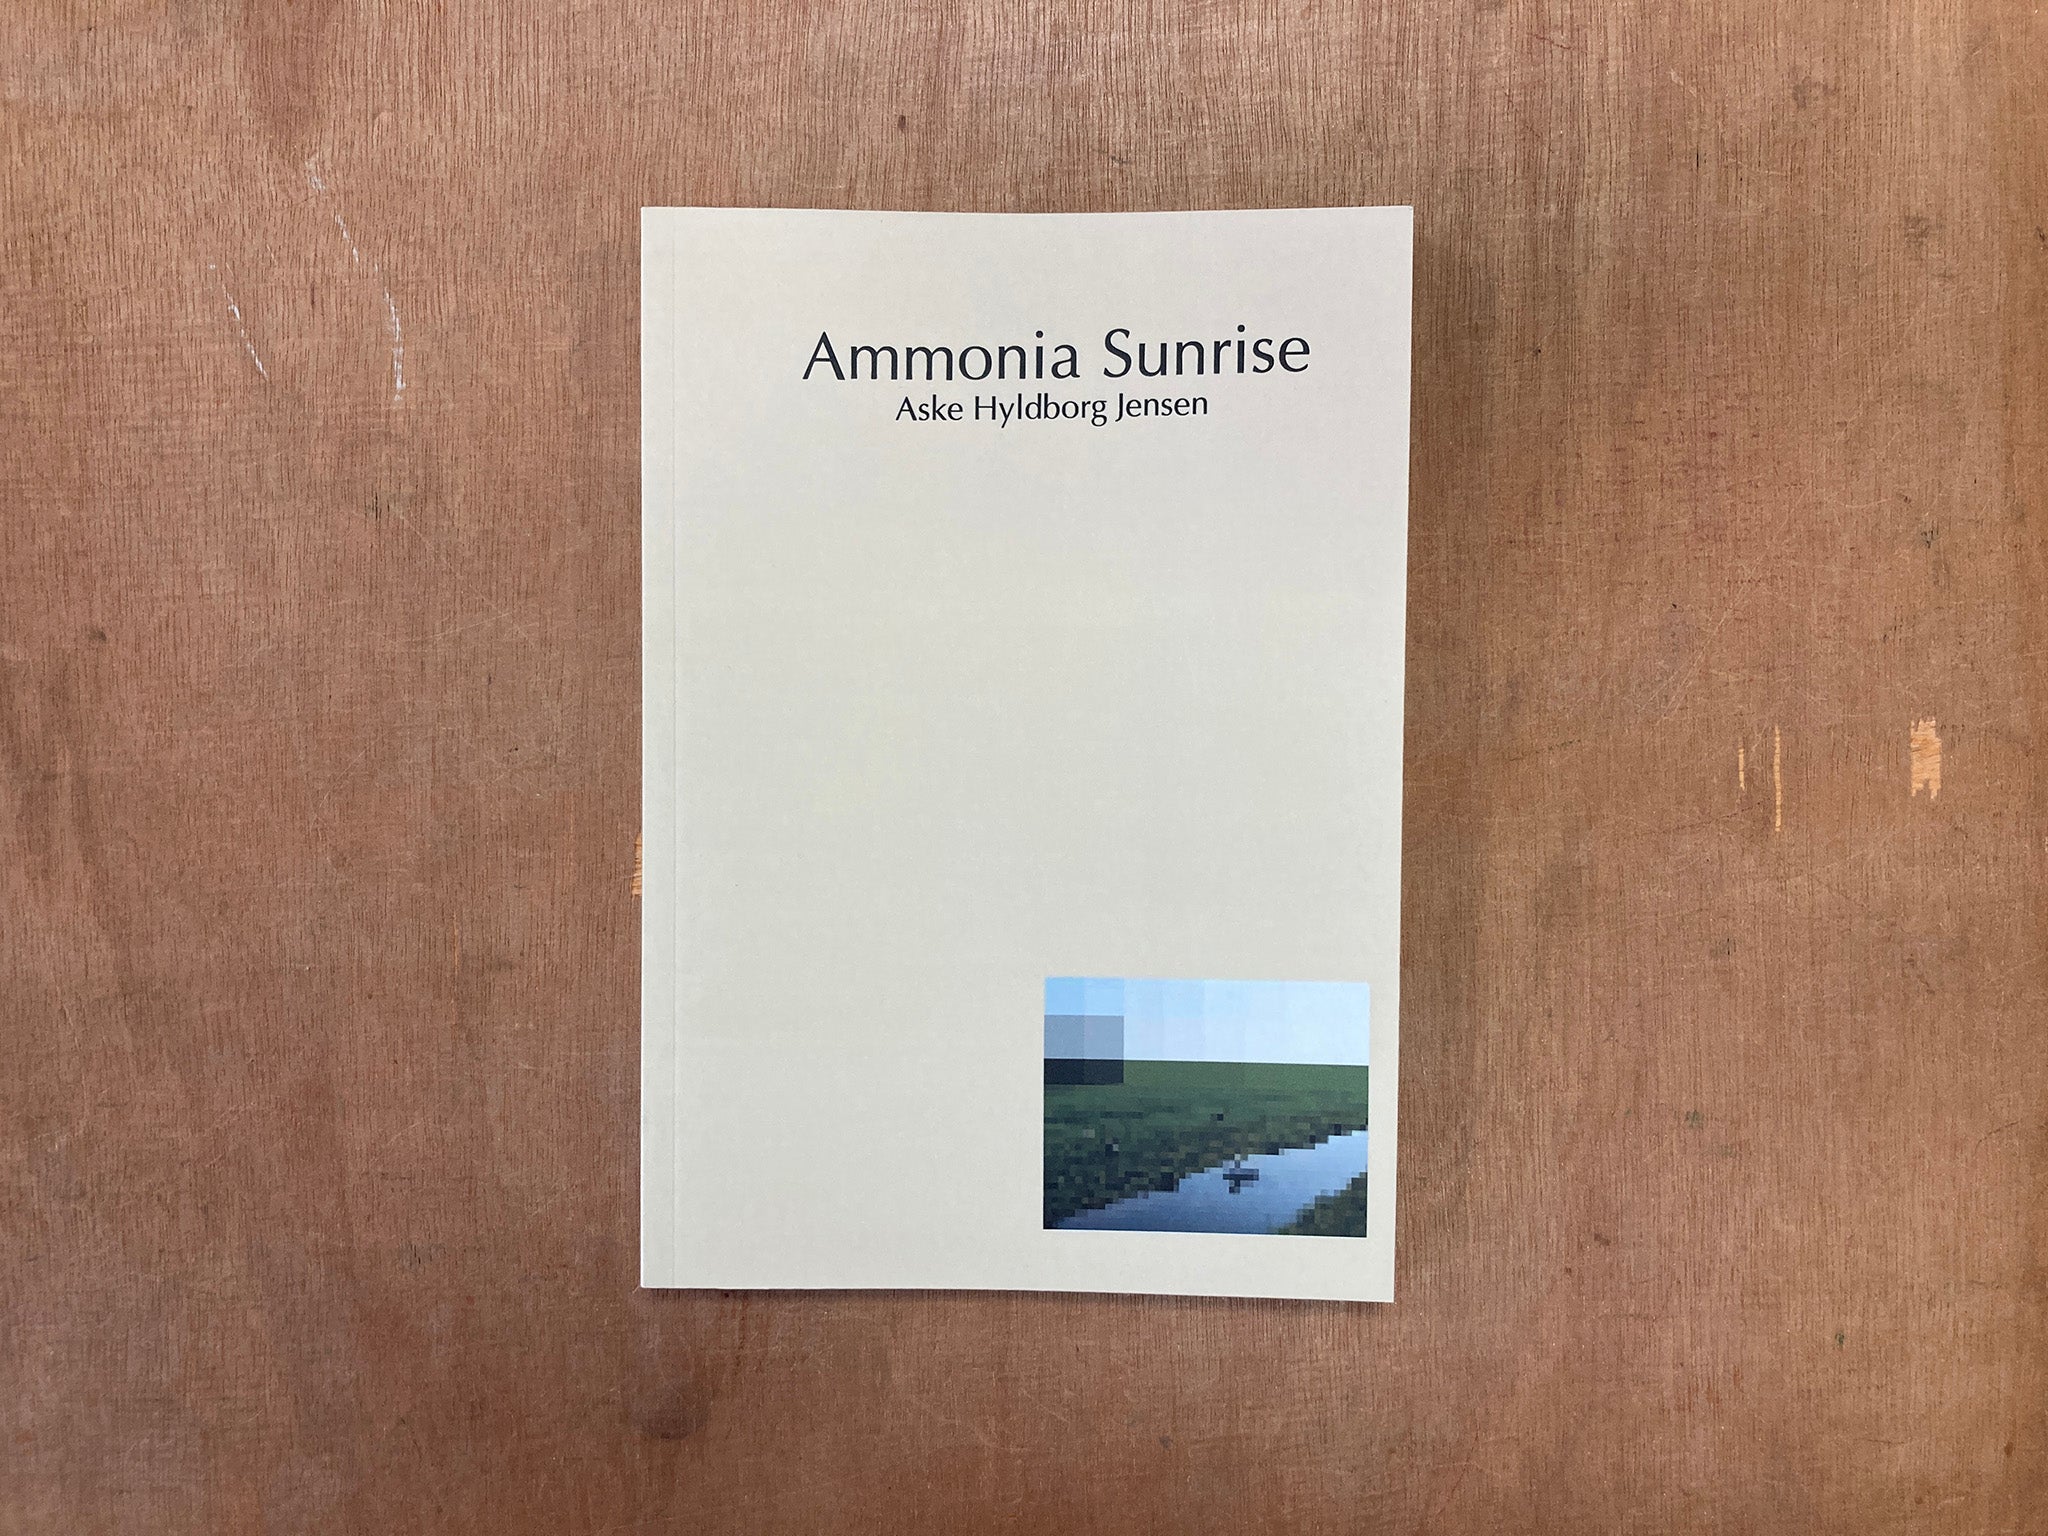 AMMONIA SUNRISE by Aske Hyldborg Jensen